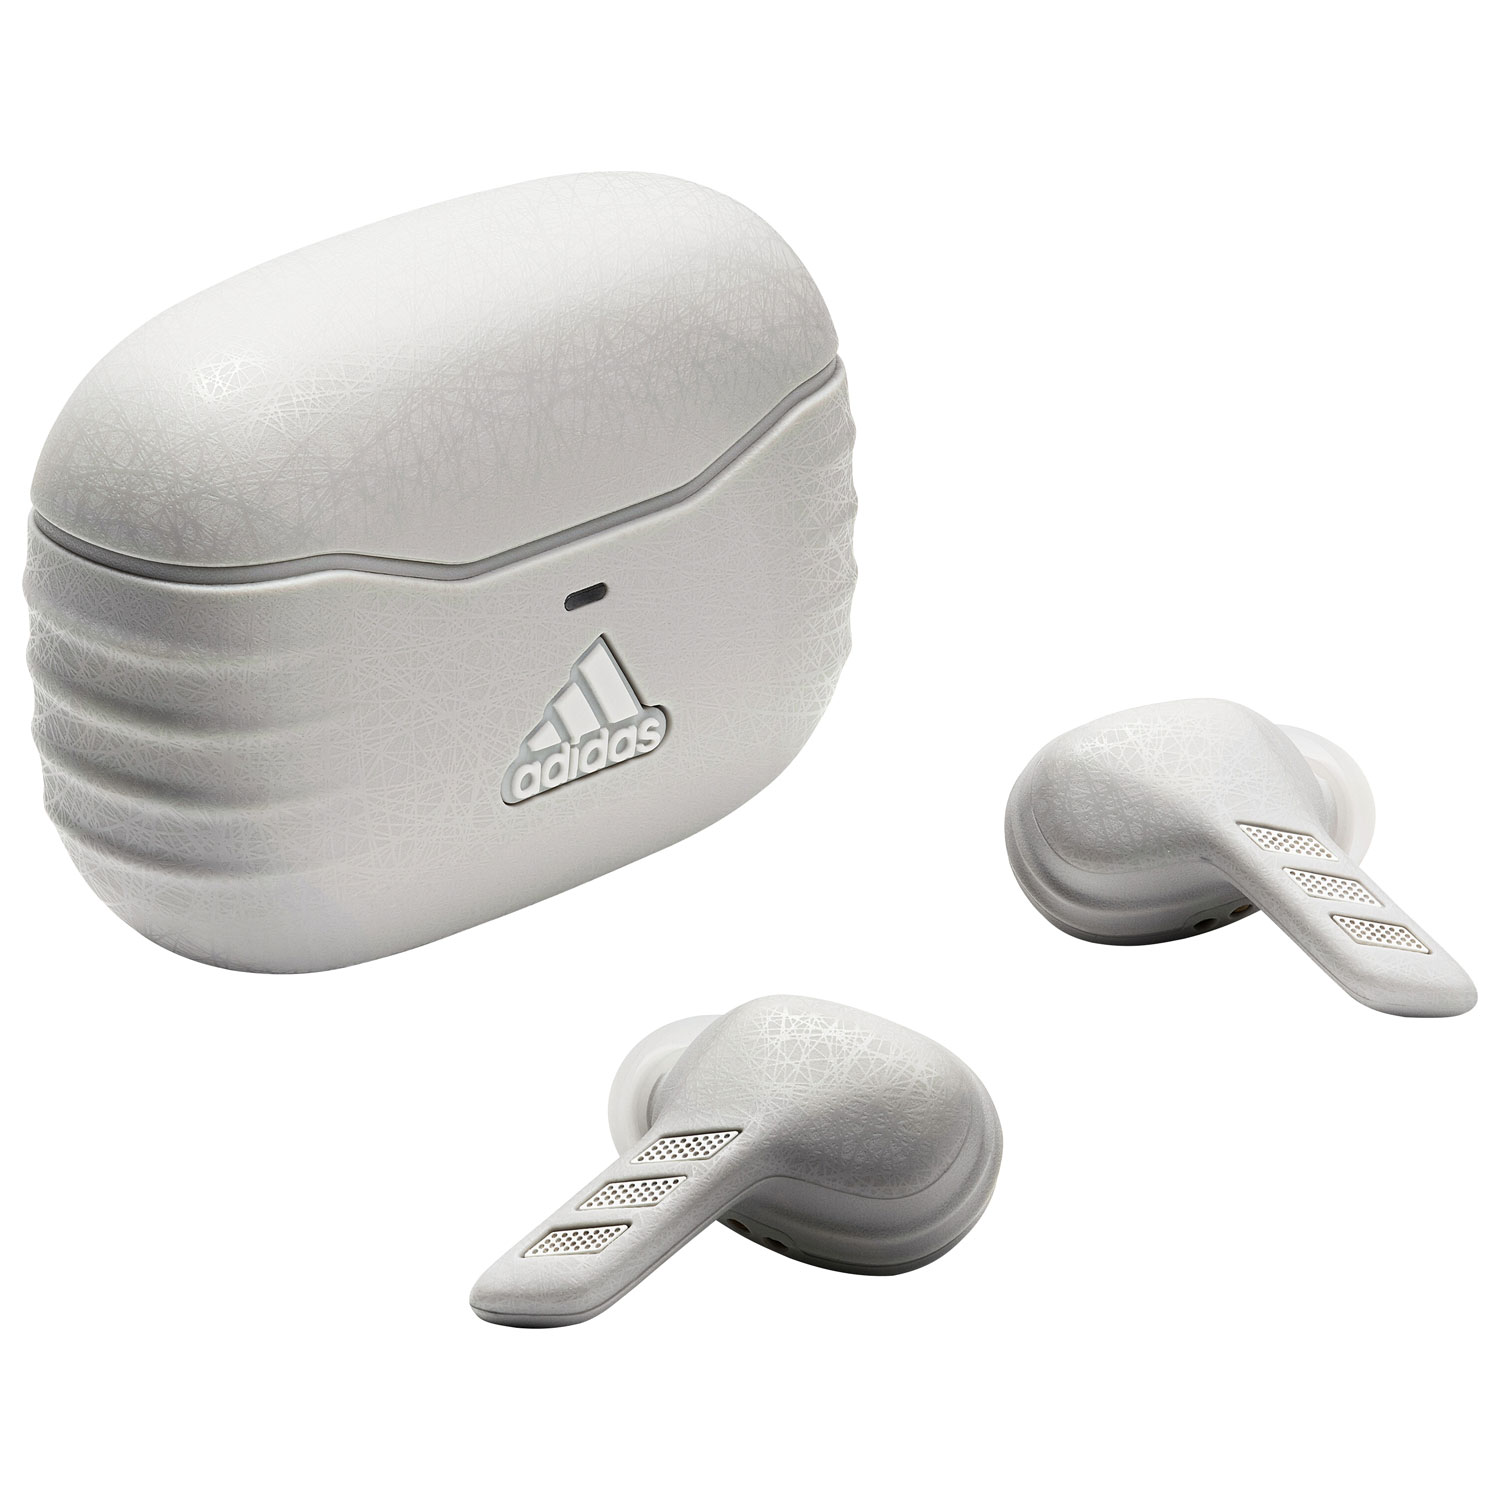 adidas Z.N.E. 01 ANC In-Ear Noise Cancelling True Wireless Earbuds - Light Grey